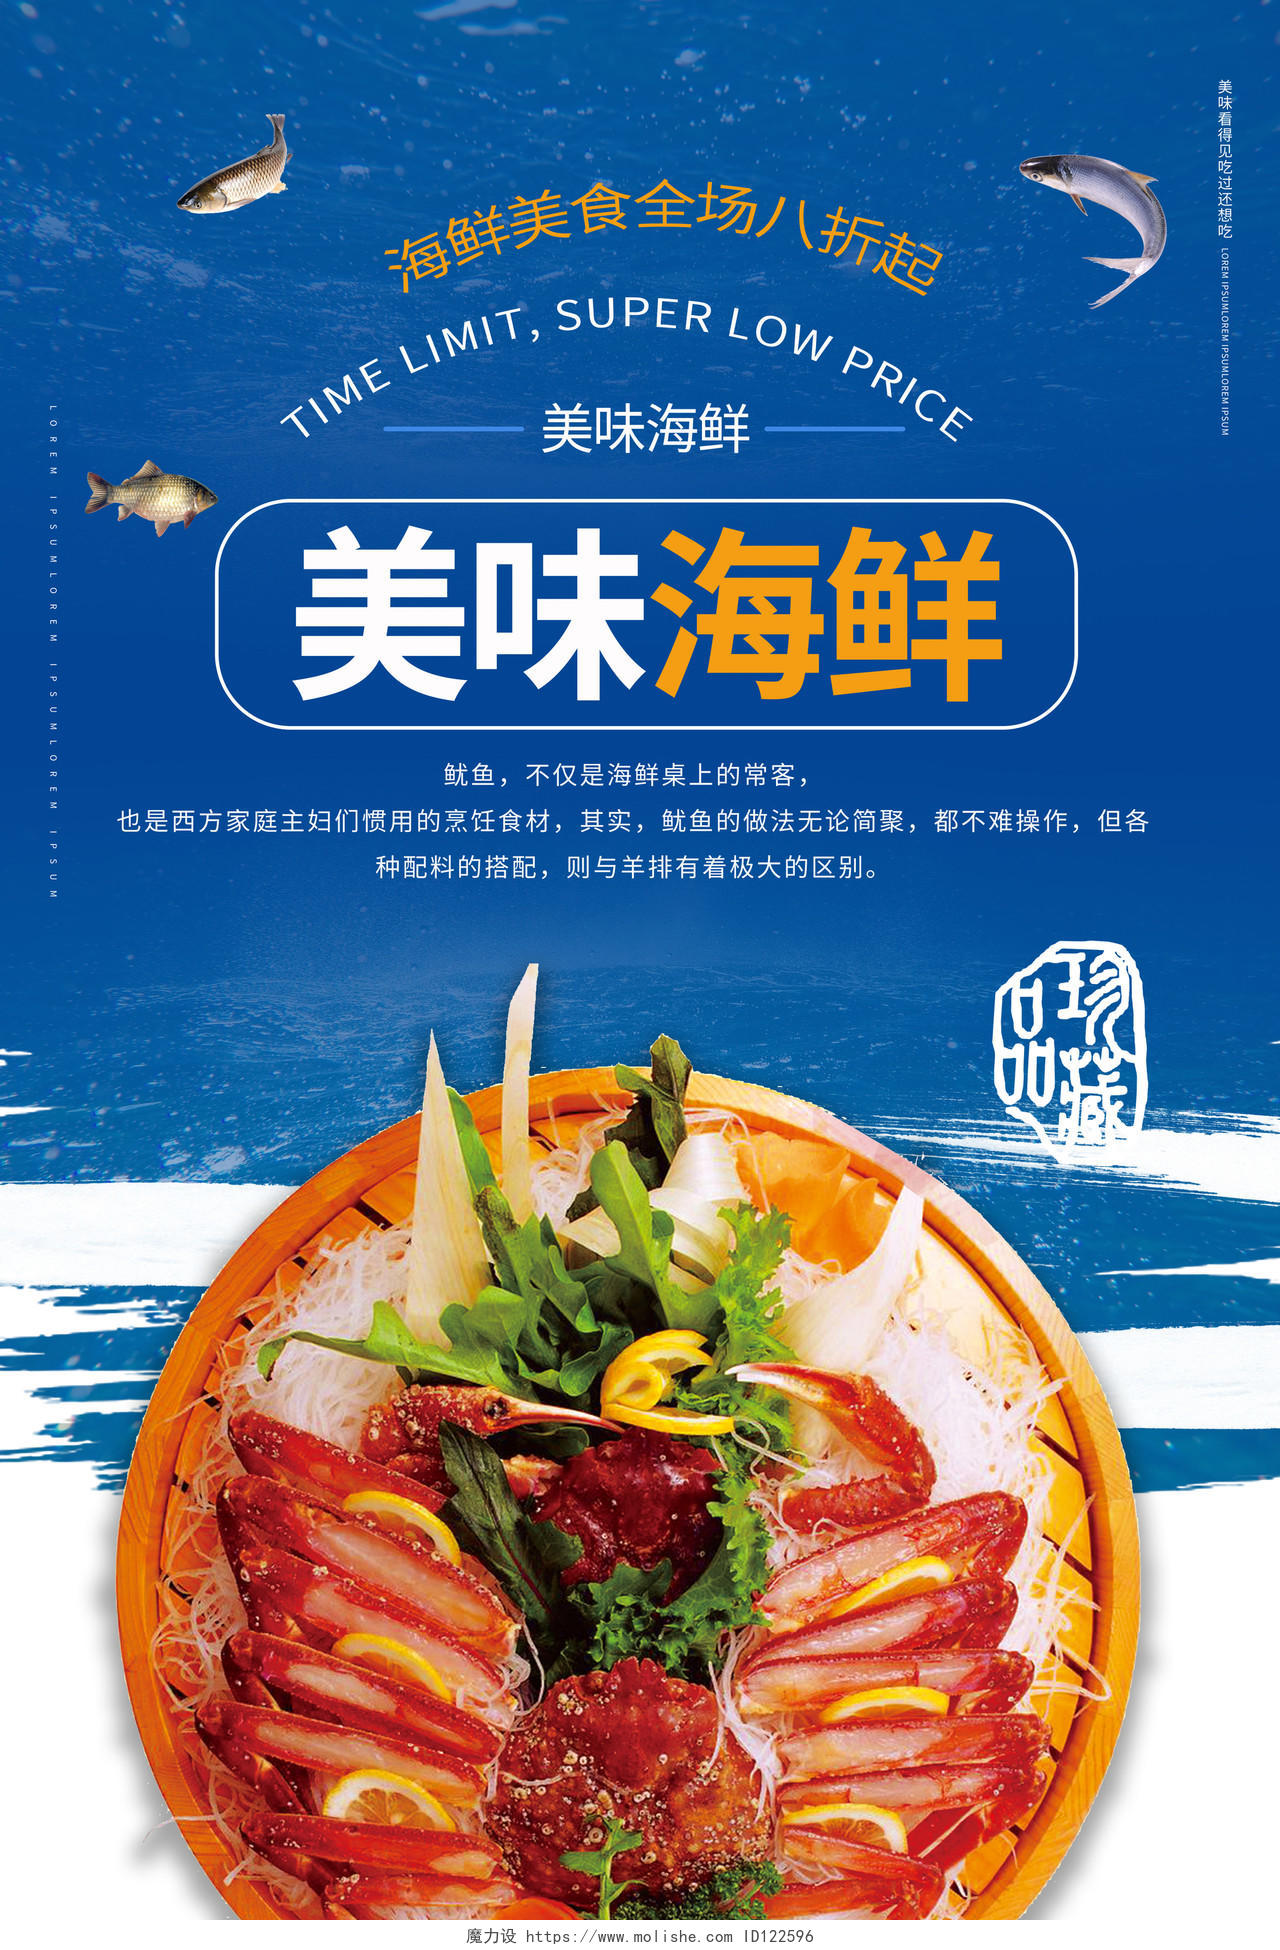 蓝色简洁大气美味海鲜饭店餐馆海鲜菜单促销宣传单